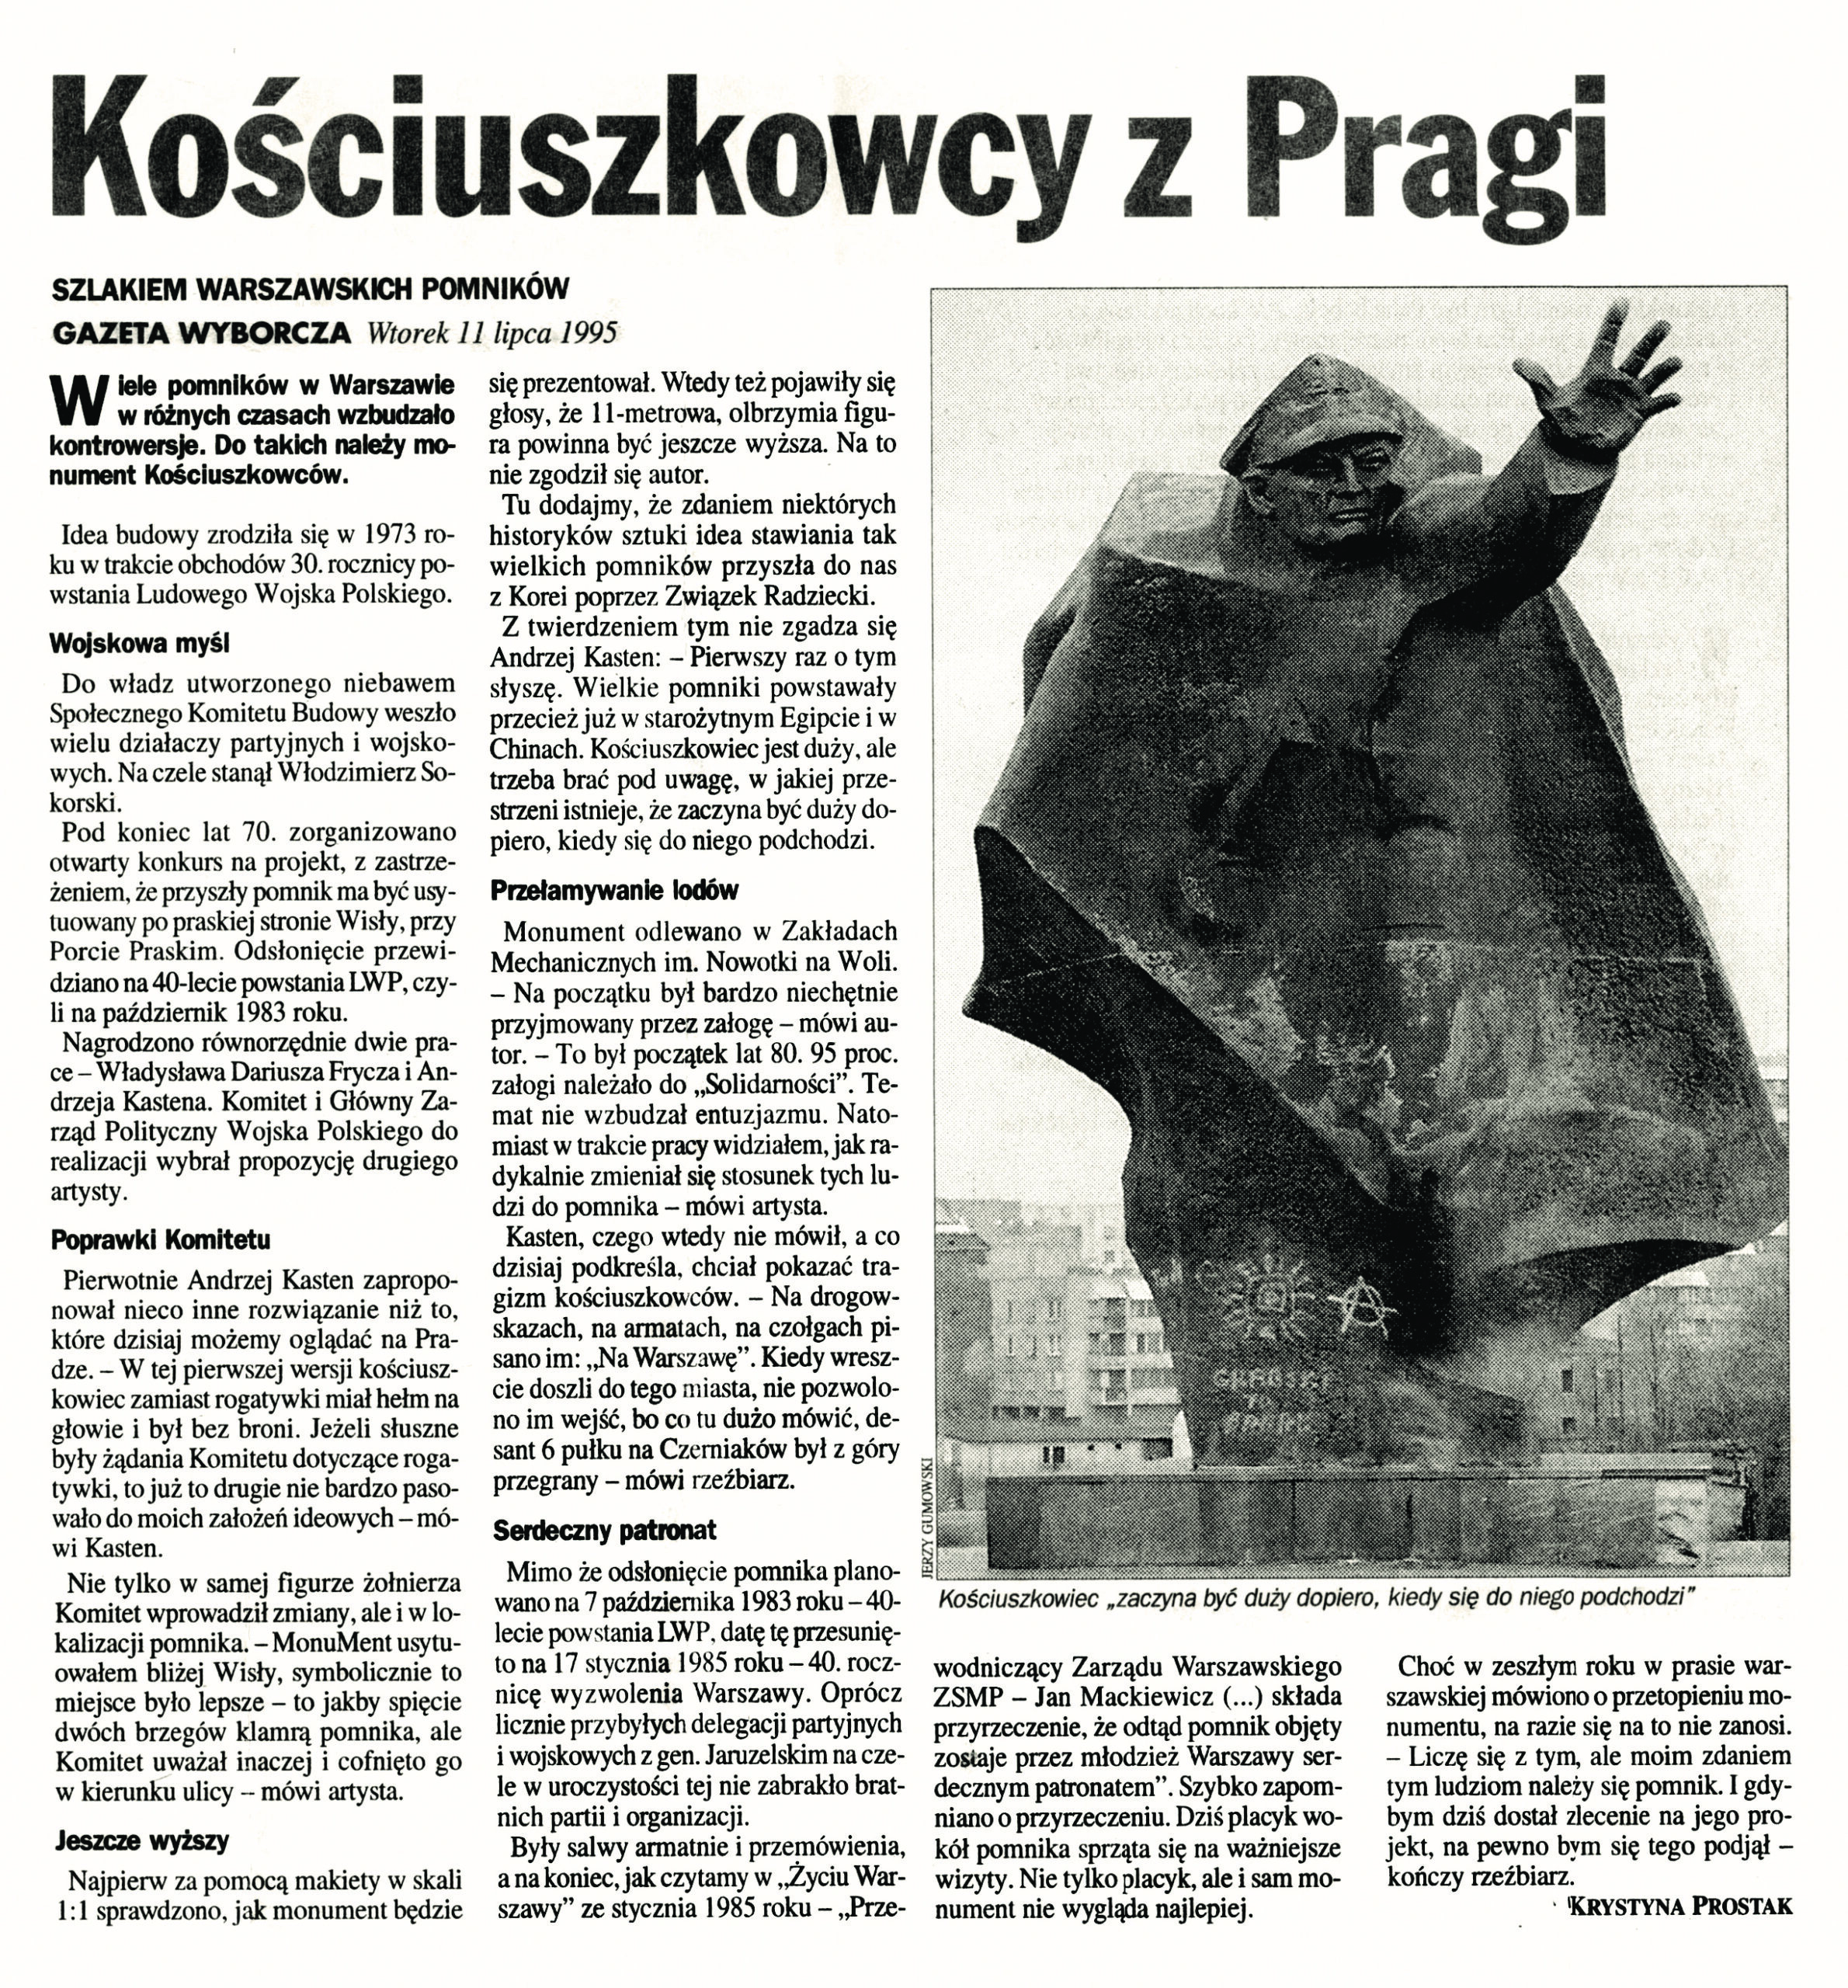 Zdjęcie artykułu Kościuszkowcy z Pragi z gazety wyborczej z 11 lipca 1995 roku. Po prawej stronie artykułu reprodukcja Pomnika Kościuszkowców.